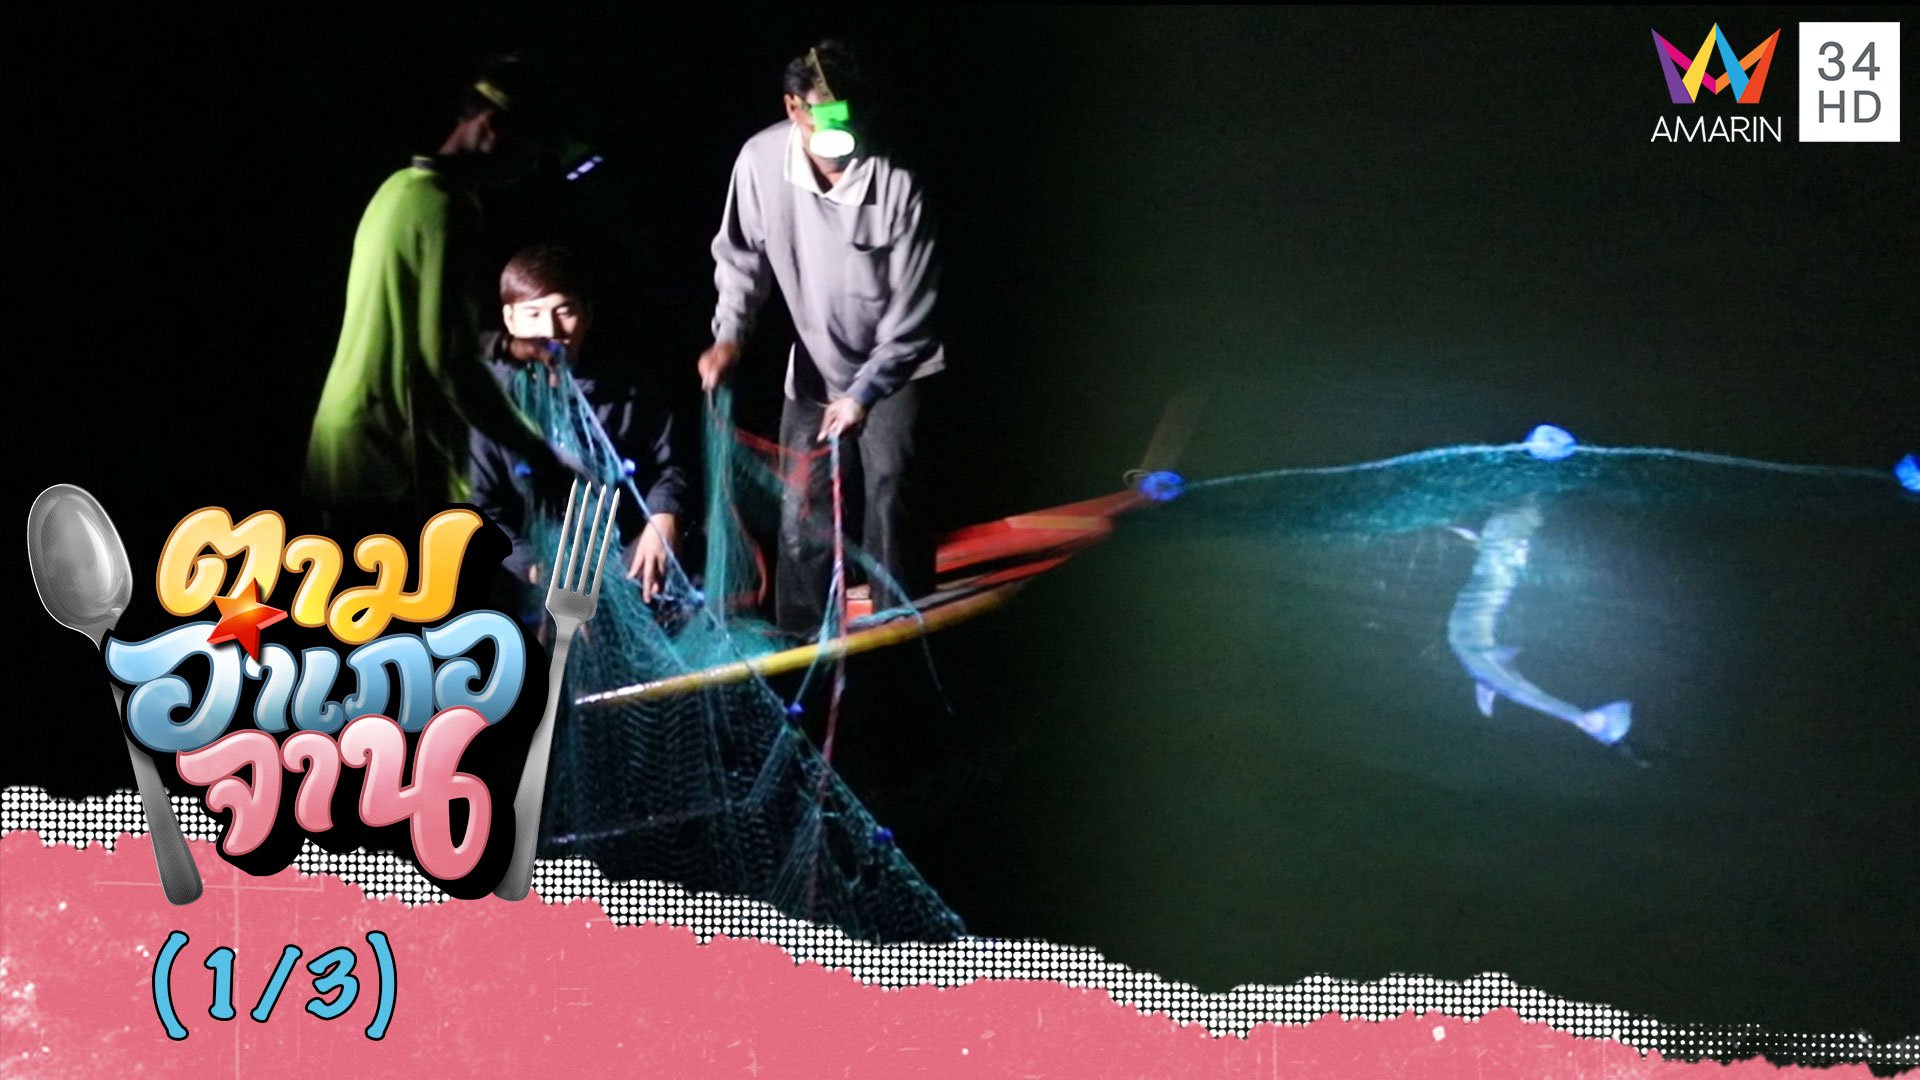 ออกเรือวางอวนล้อมปลาโทง ปลาอันตรายจ.ระนอง | ตามอำเภอจาน | 27 มิ.ย. 63 (1/3) | AMARIN TVHD34